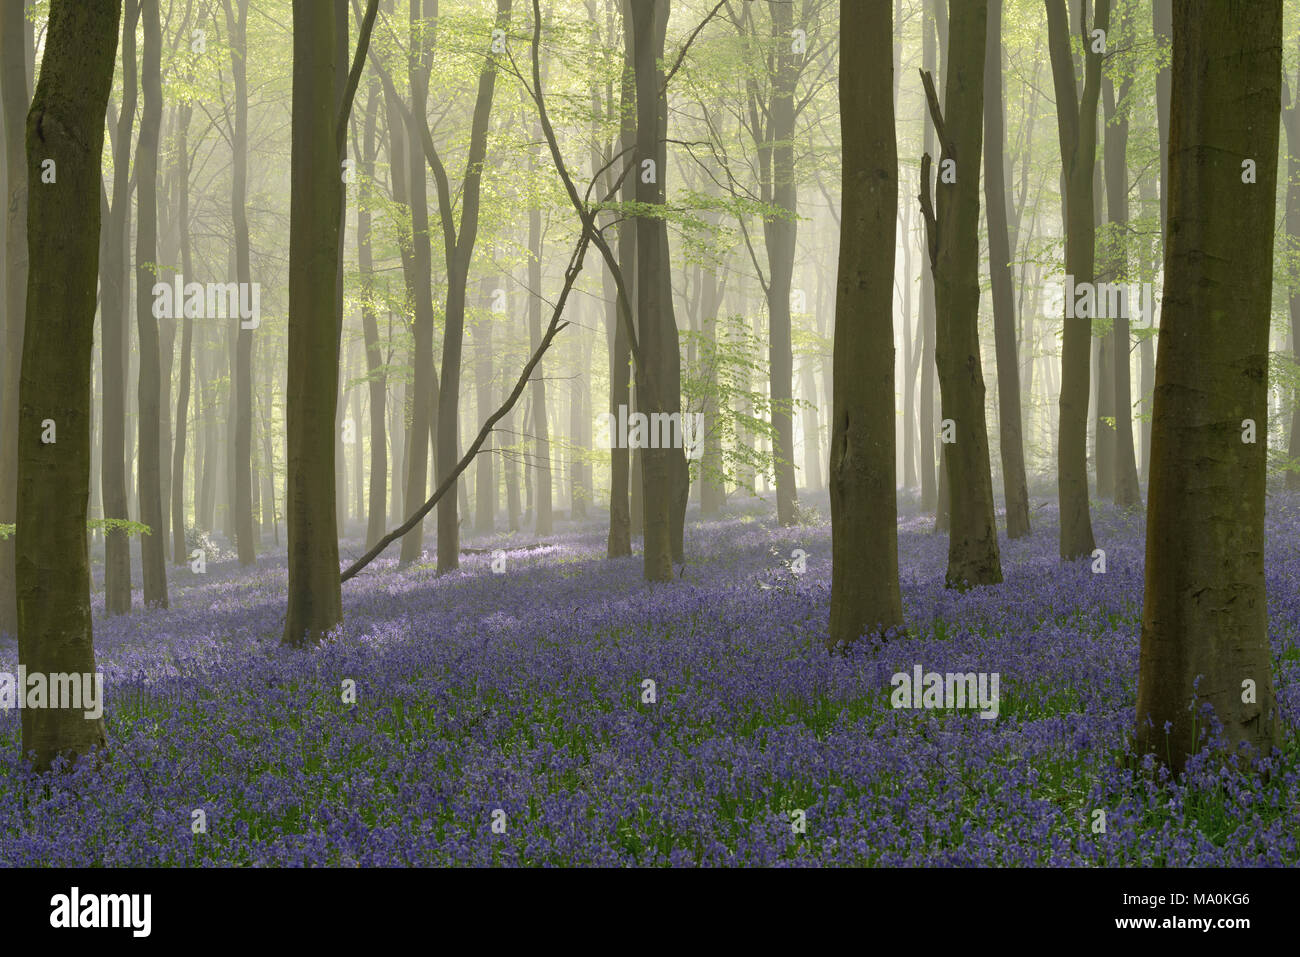 Sonnenlicht bricht durch die Bäume in einem Nebel gefüllt buche wald Teppichboden mit Glockenblumen. Stockfoto